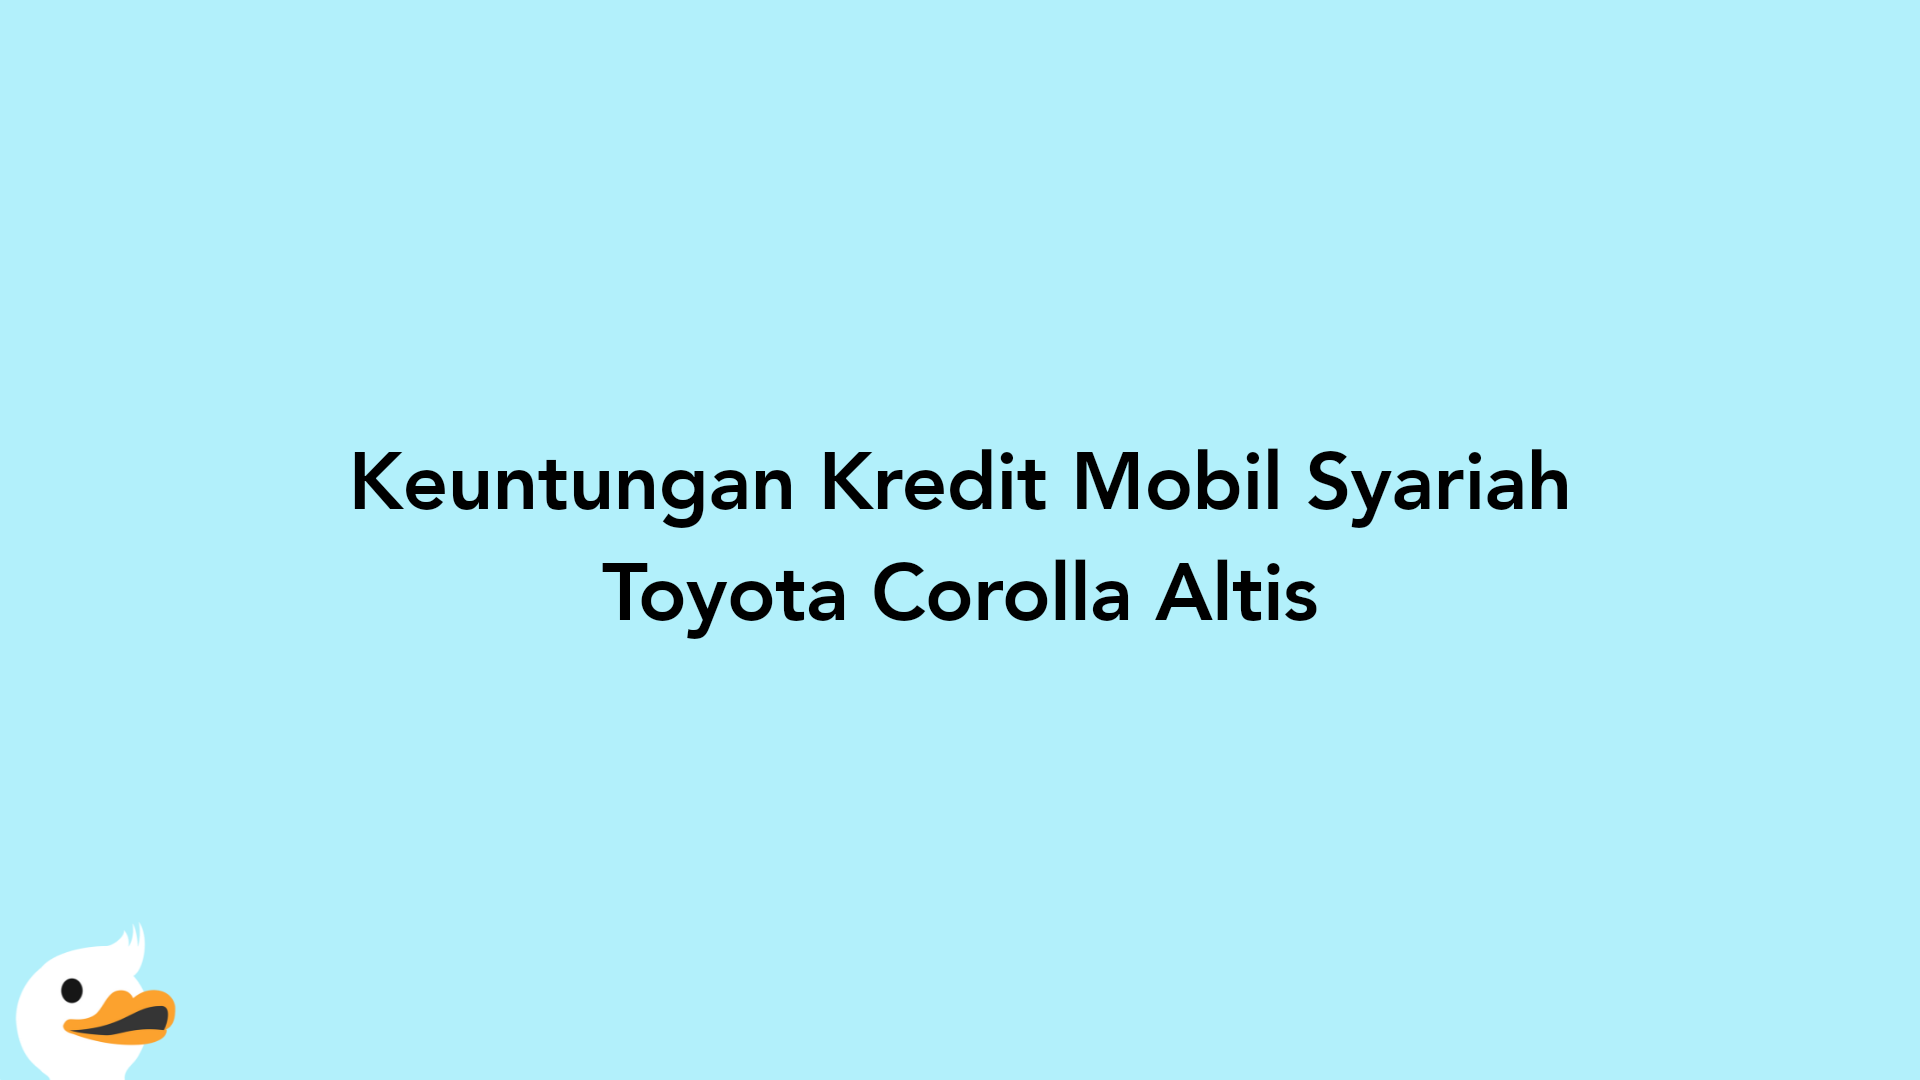 Keuntungan Kredit Mobil Syariah Toyota Corolla Altis